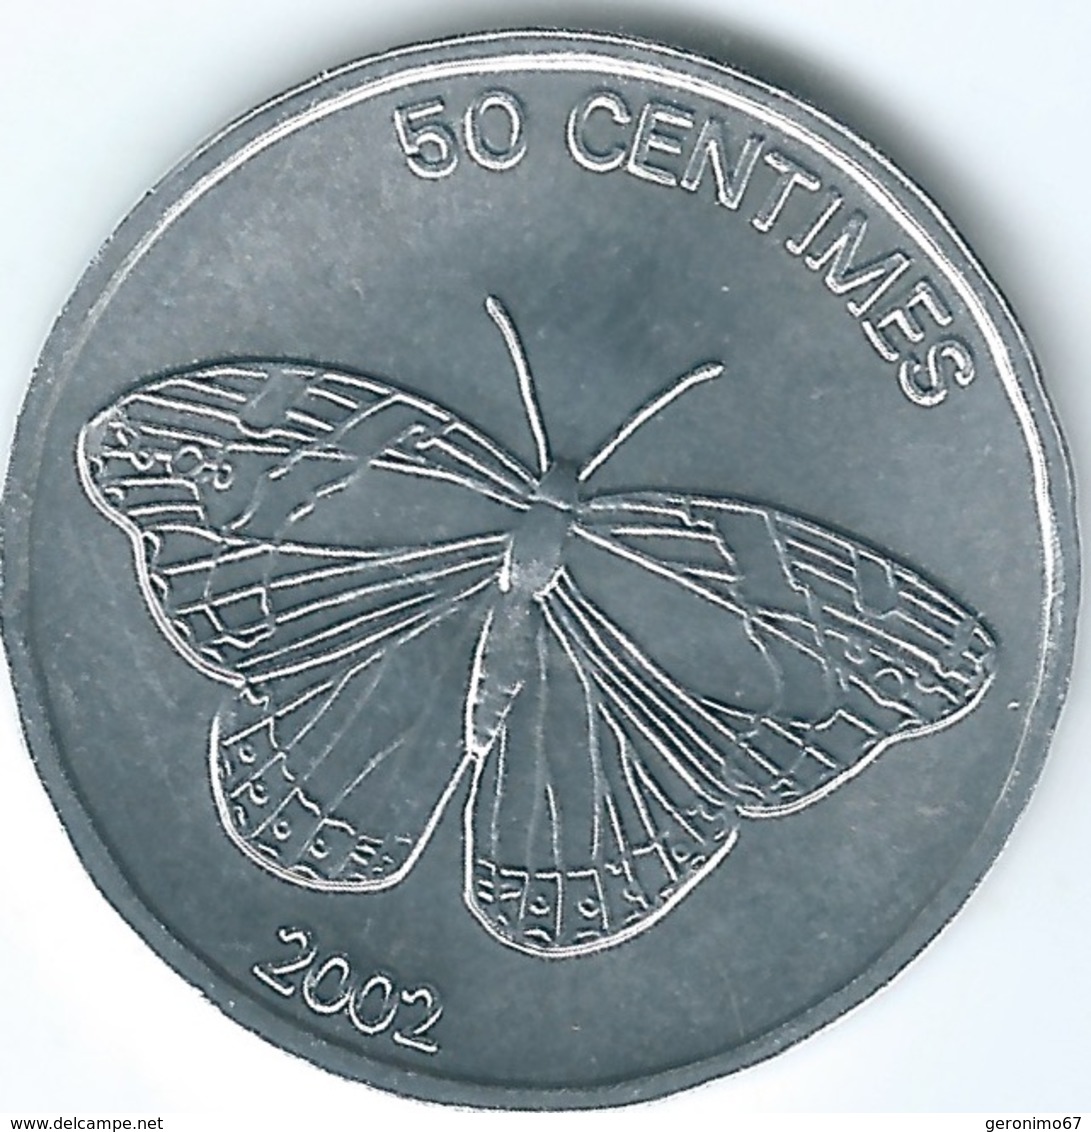 Congo - 50 Centimes - 2002 - Butterfly - KM80 - Congo (République Démocratique 1998)